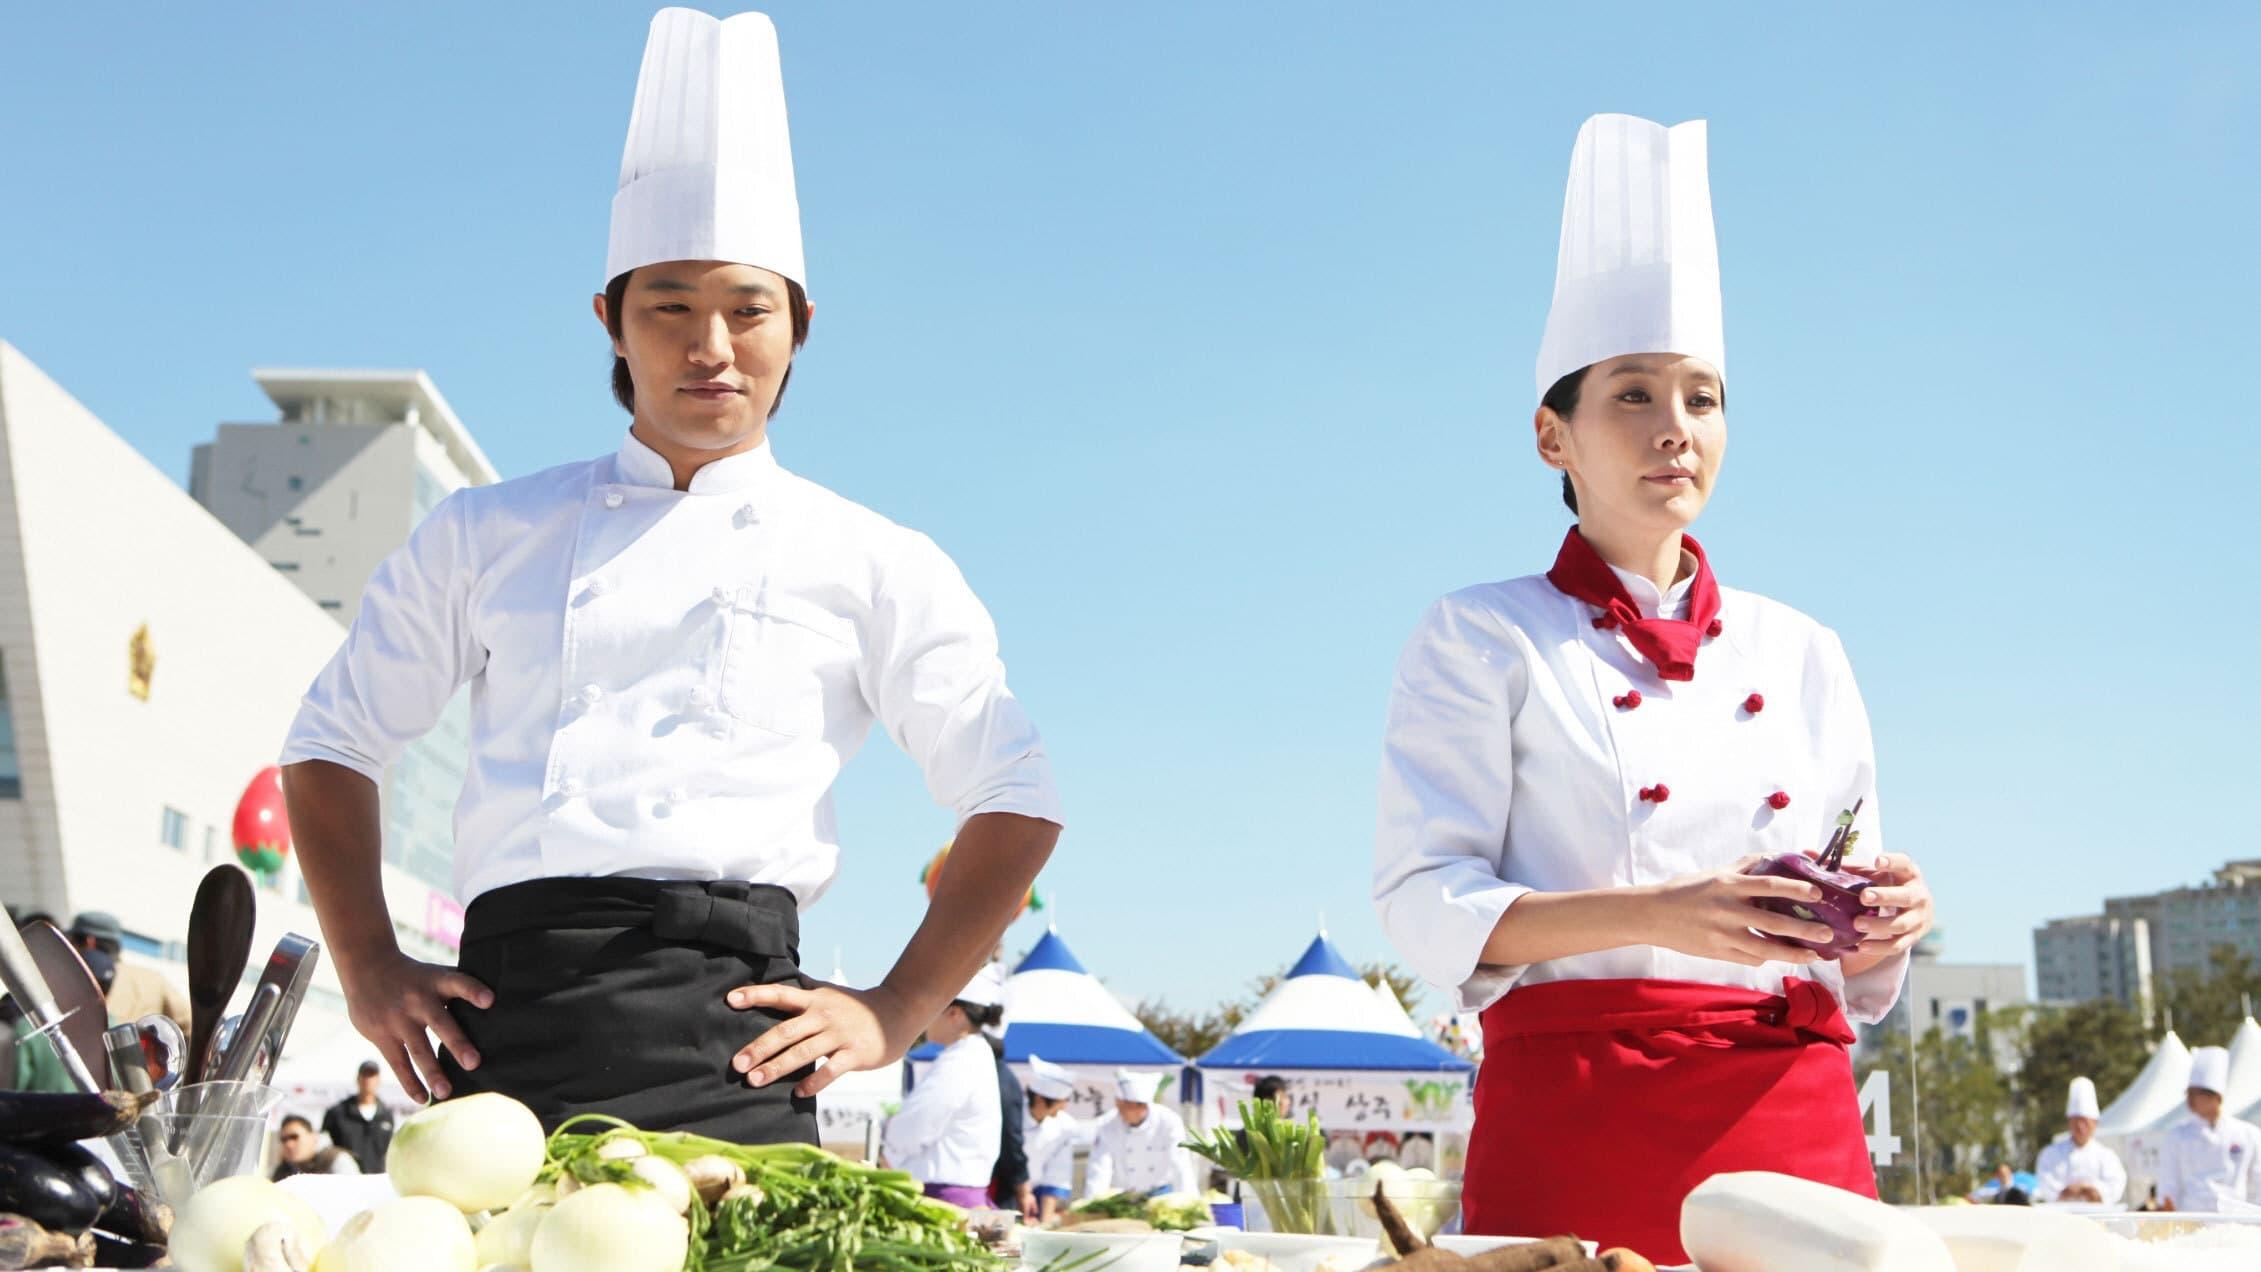 Le Grand Chef 2: Kimchi Battle backdrop